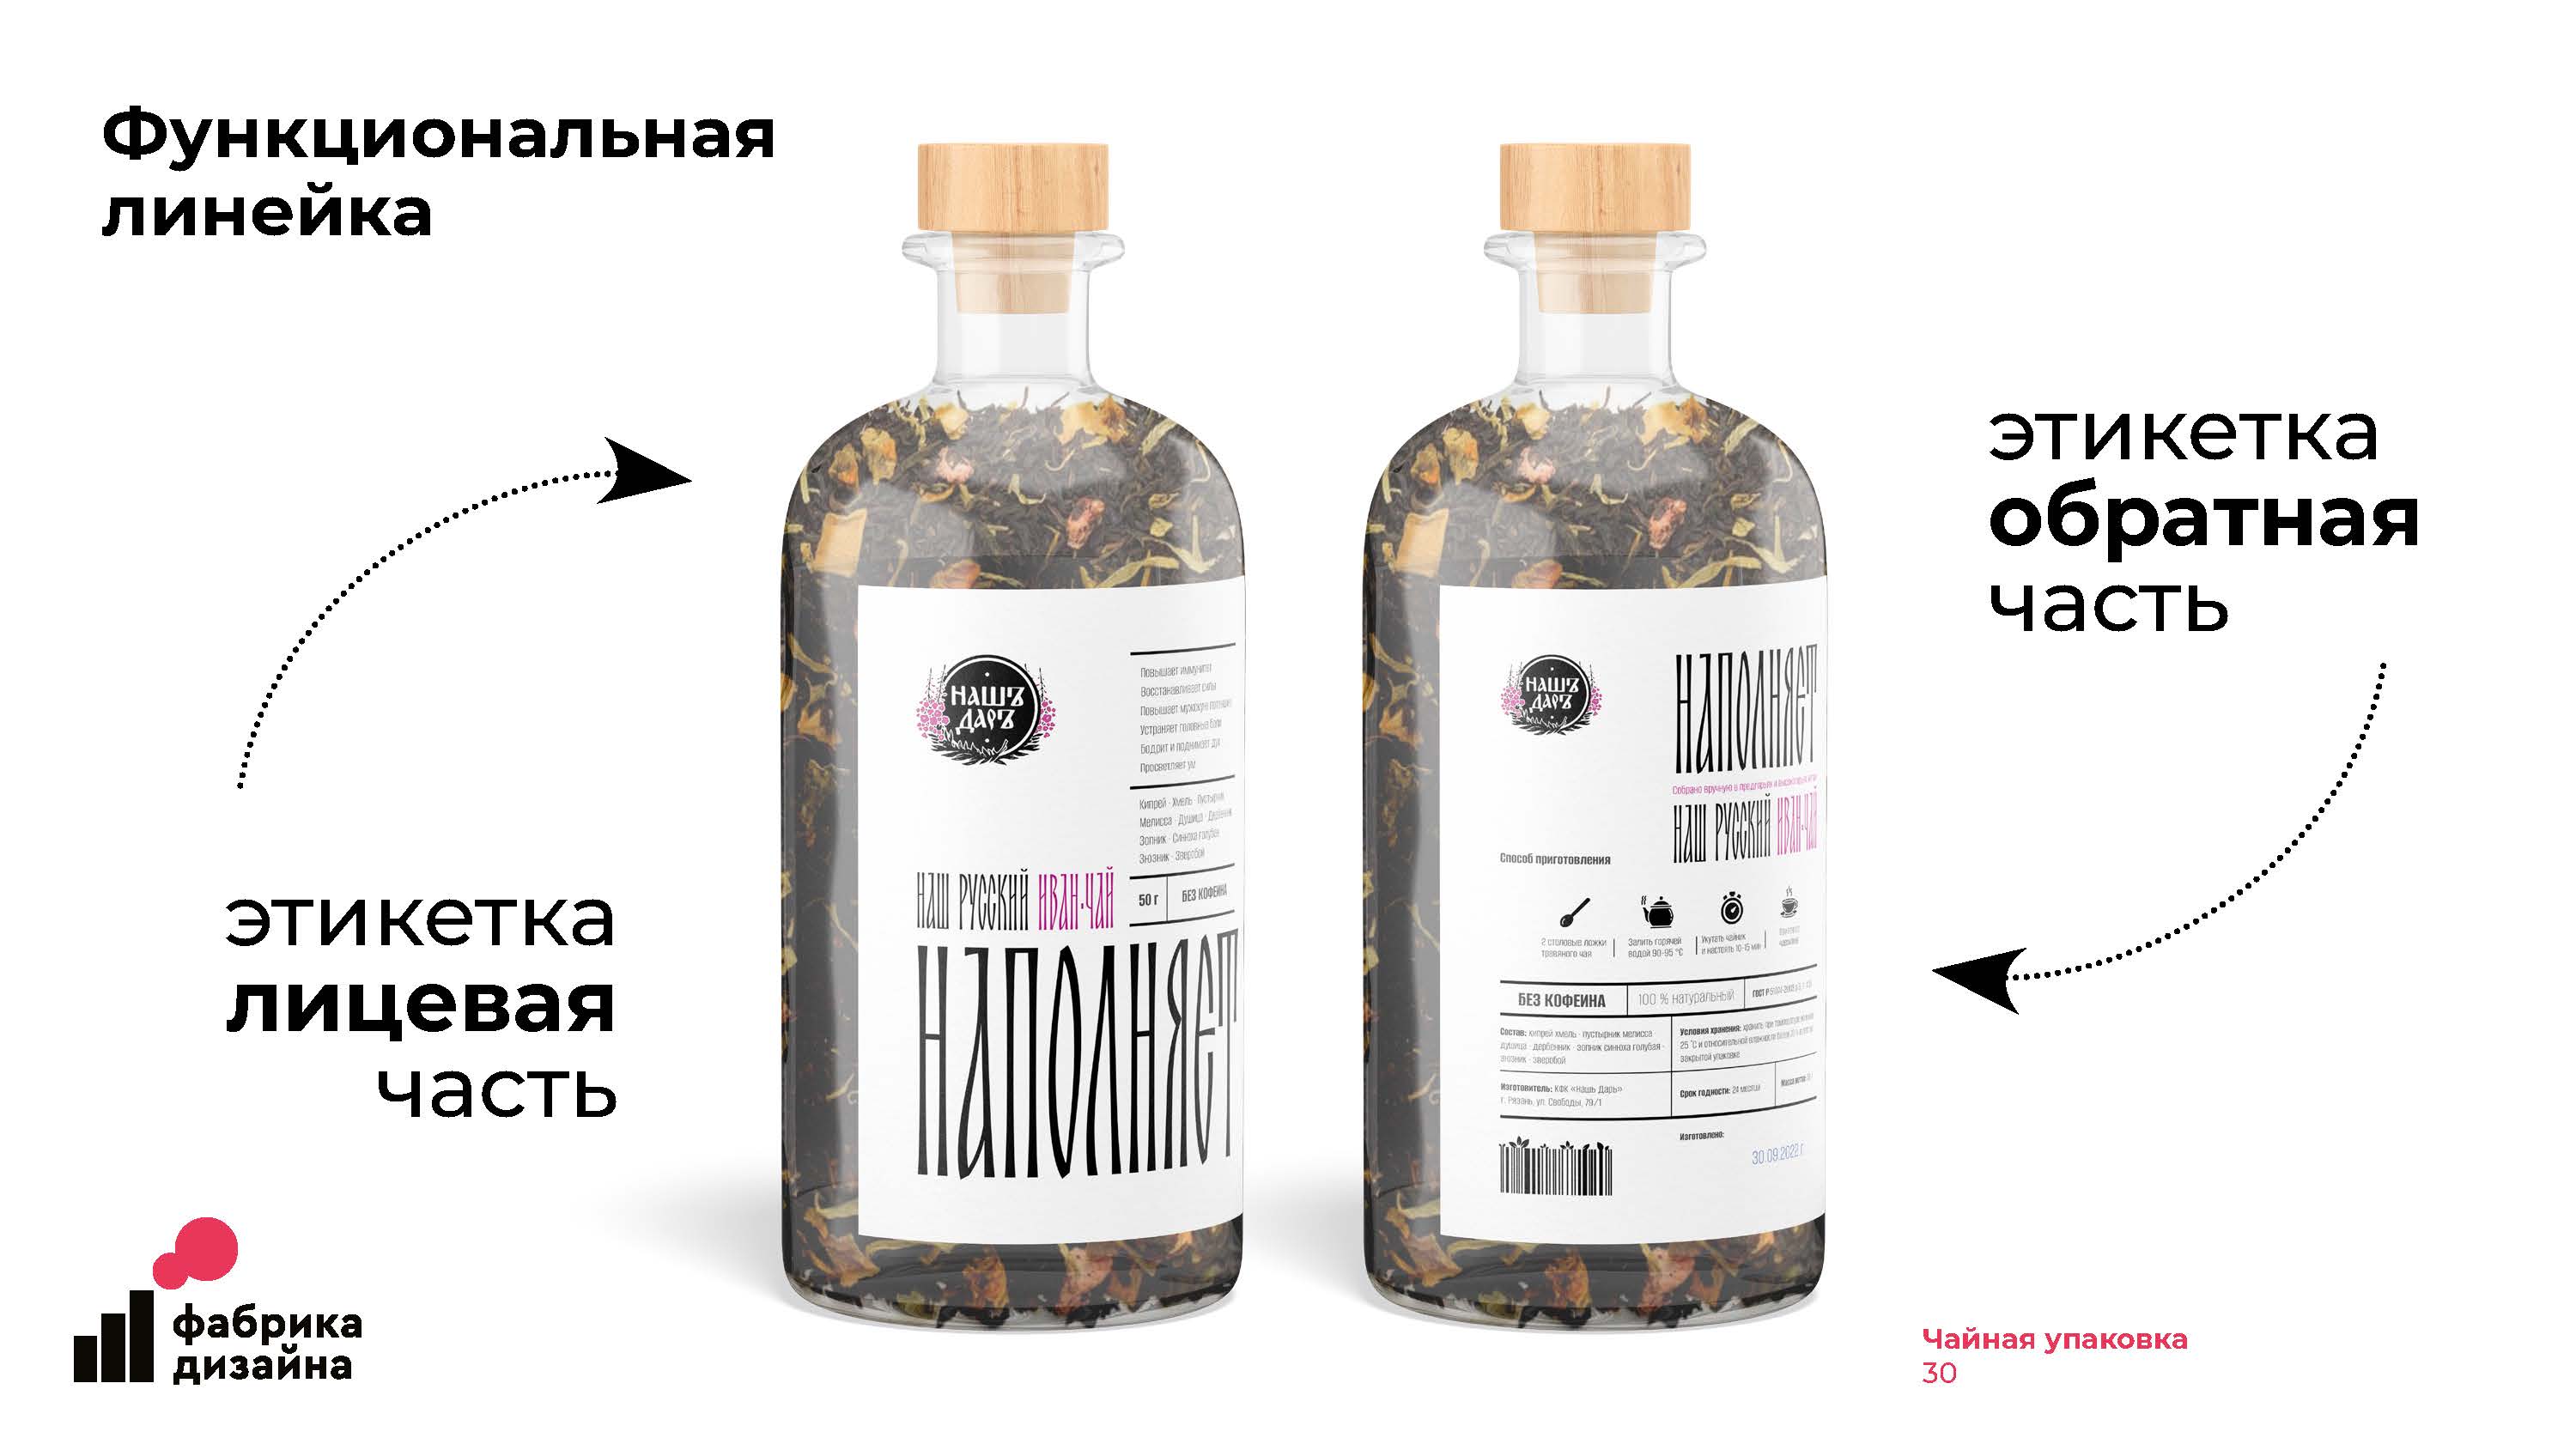 Создание чайной упаковки для травяного Иван-чая. Функциональная линейка Дизайн упаковки Портфолио